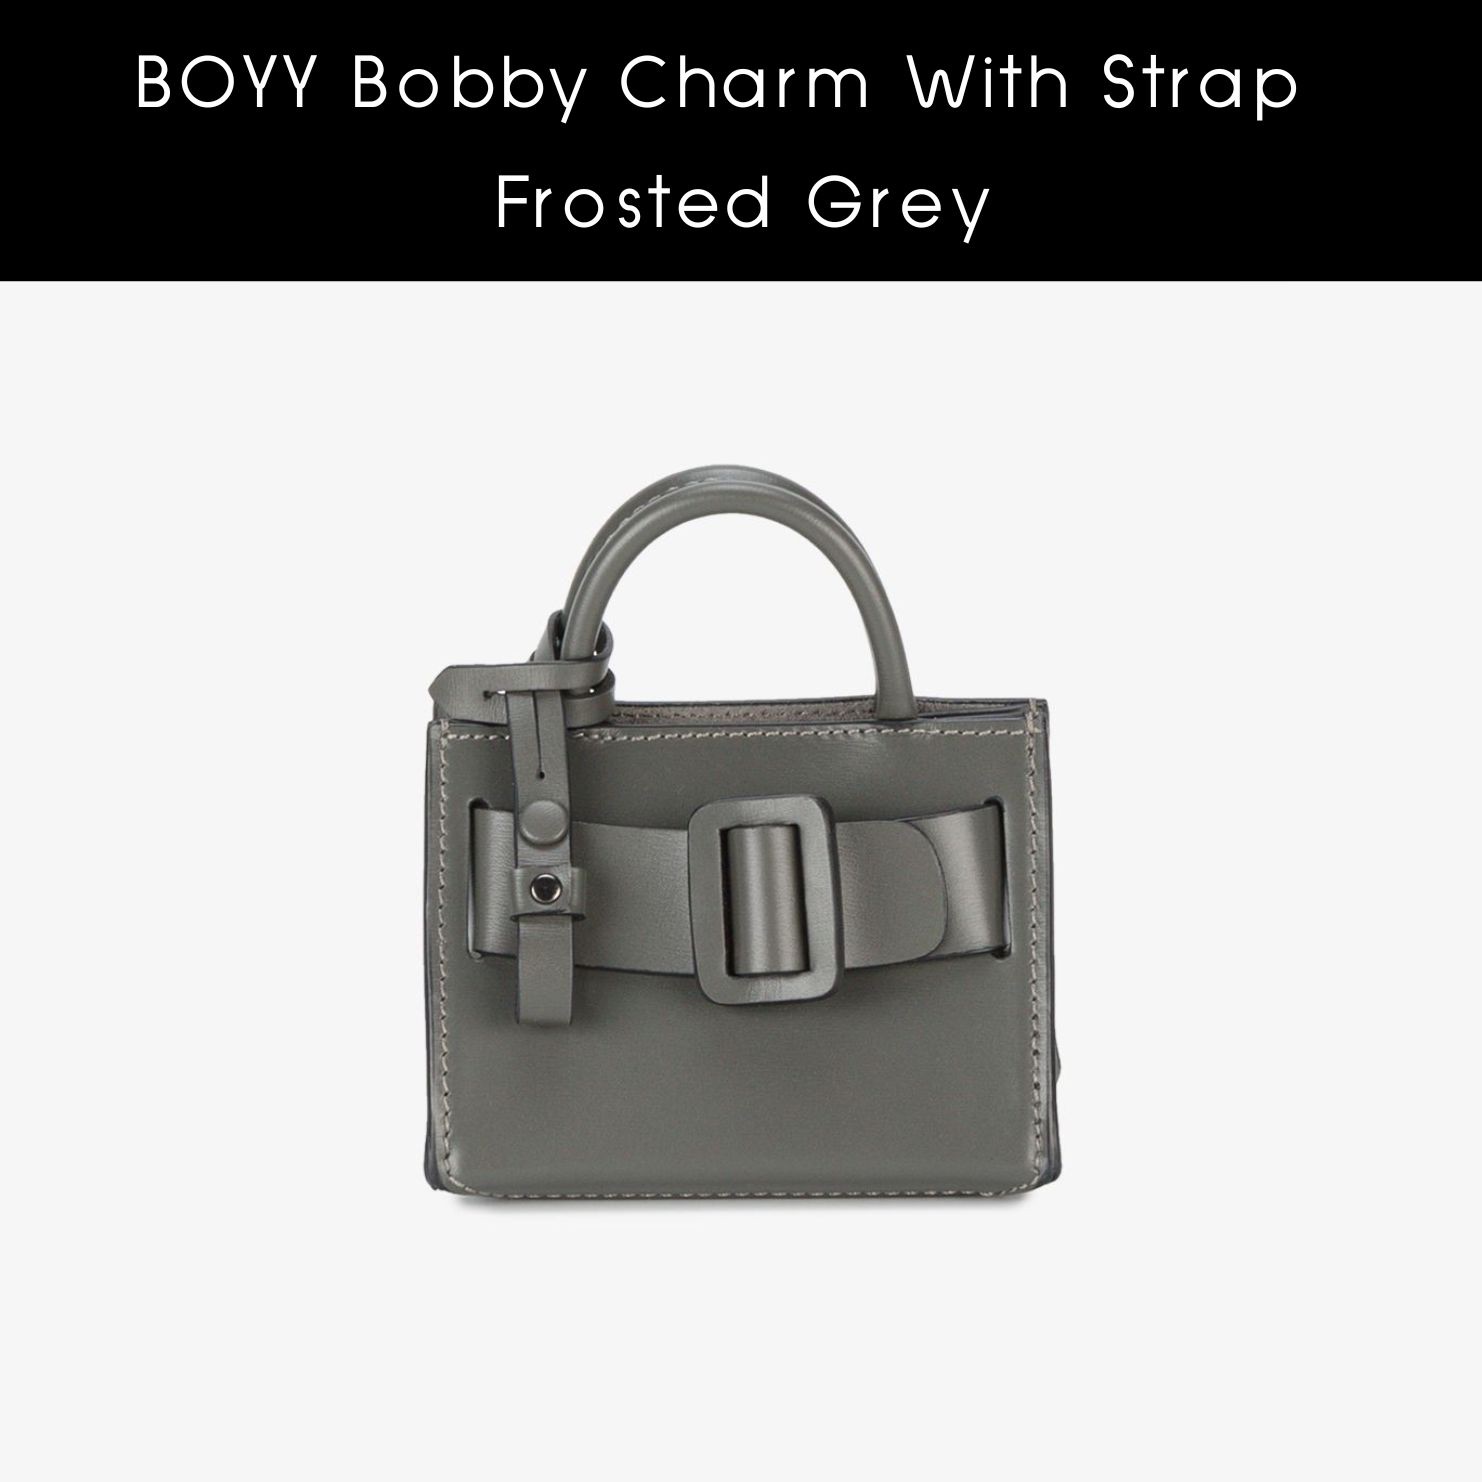 Boyy Bobby Charm on Strap